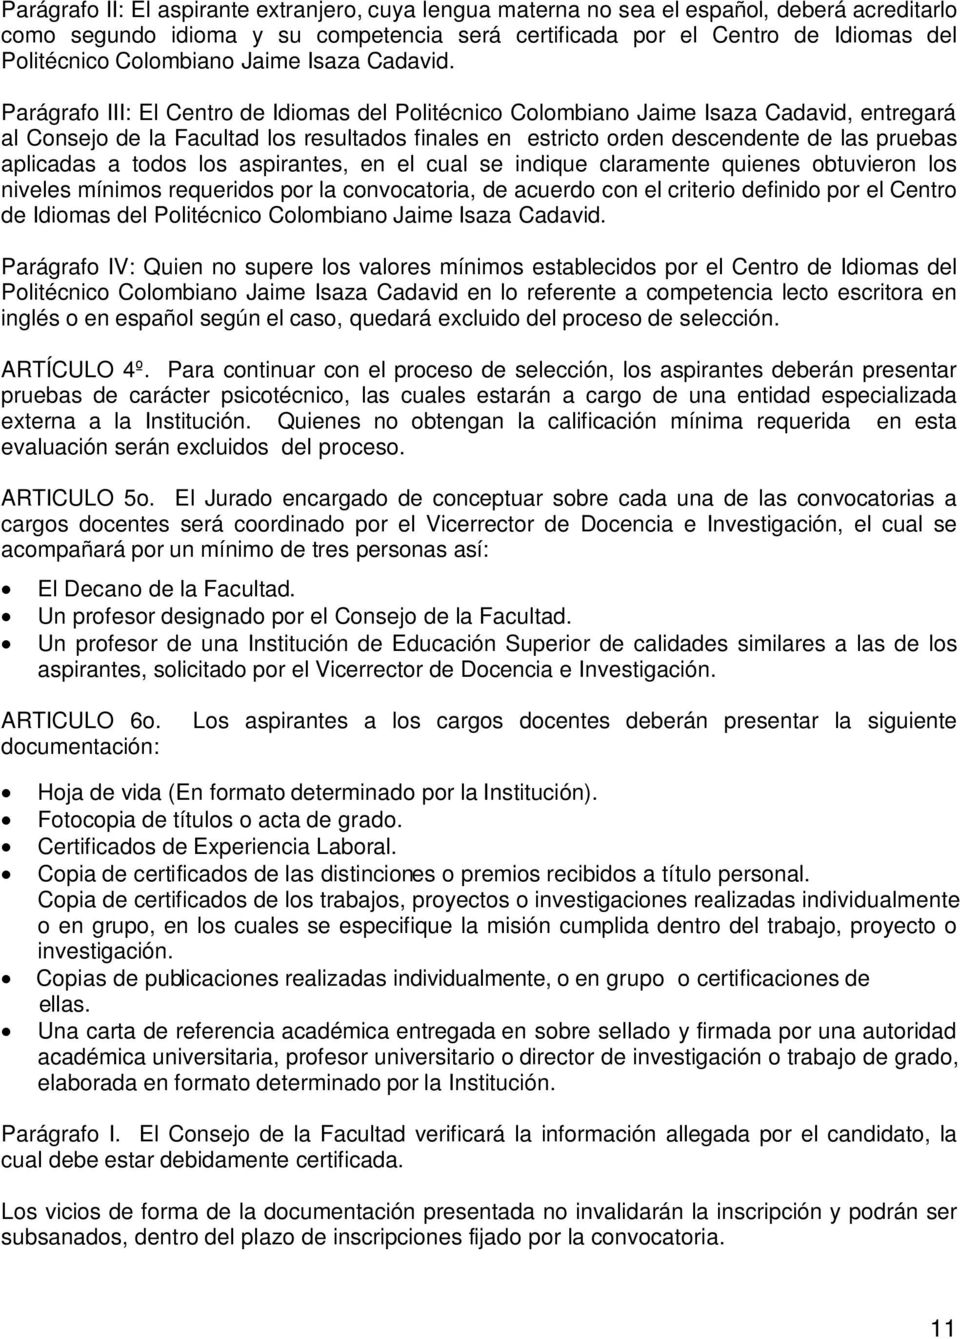 Parágrafo III: El Centro de Idiomas del Politécnico Colombiano Jaime Isaza Cadavid, entregará al Consejo de la Facultad los resultados finales en estricto orden descendente de las pruebas aplicadas a